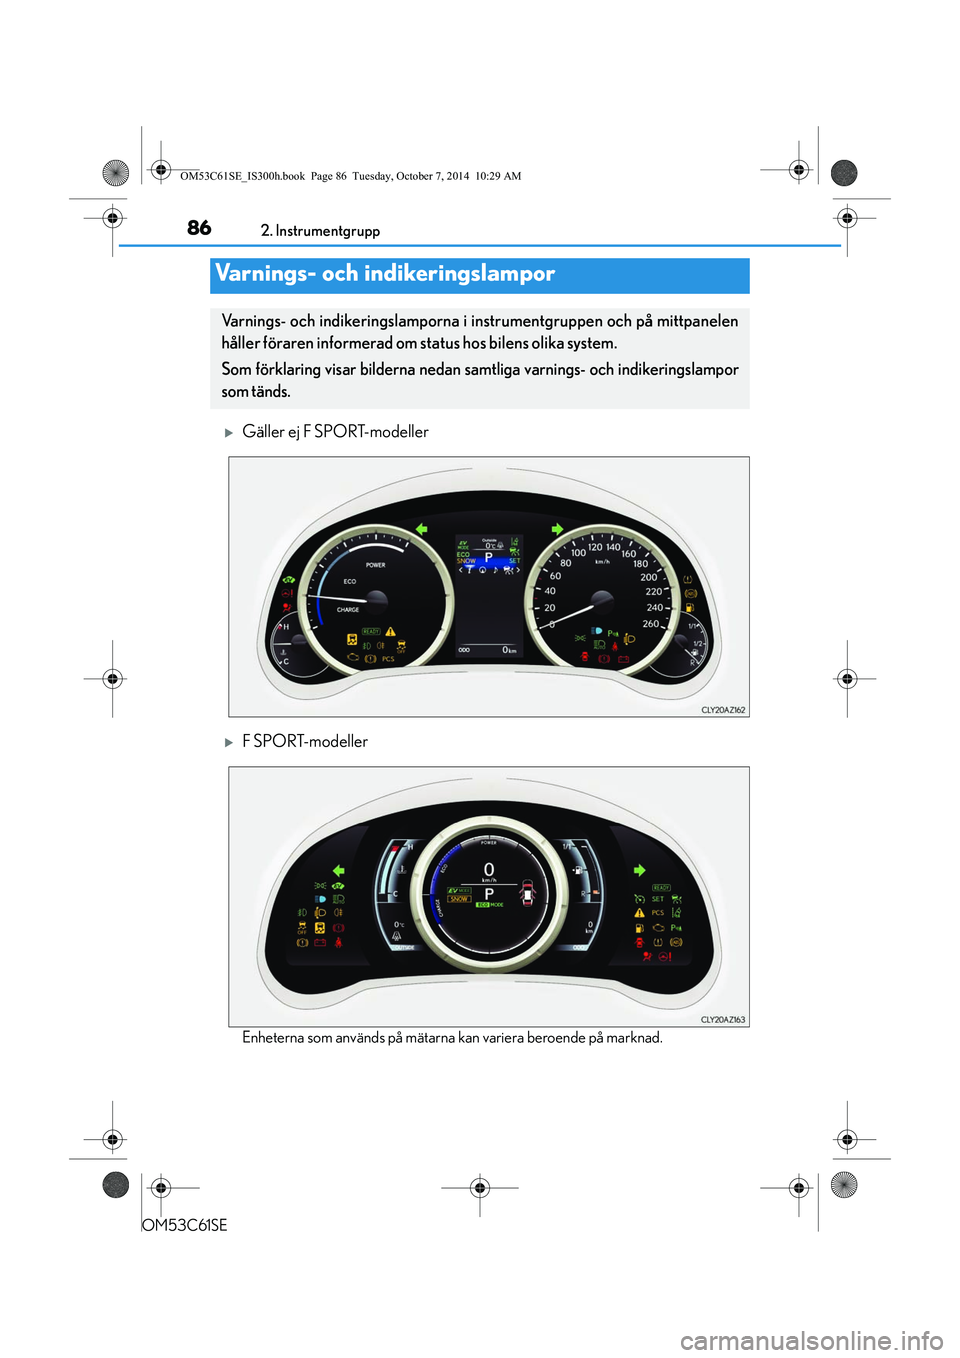 Lexus IS300h 2014  Ägarmanual (in Swedish) 86
OM53C61SE2. Instrumentgrupp
Gäller ej F SPORT-modeller
F SPORT-modeller
Enheterna som används på mätarna 
kan variera beroende på marknad.
Varnings- och indikeringslampor
Varnings- och i